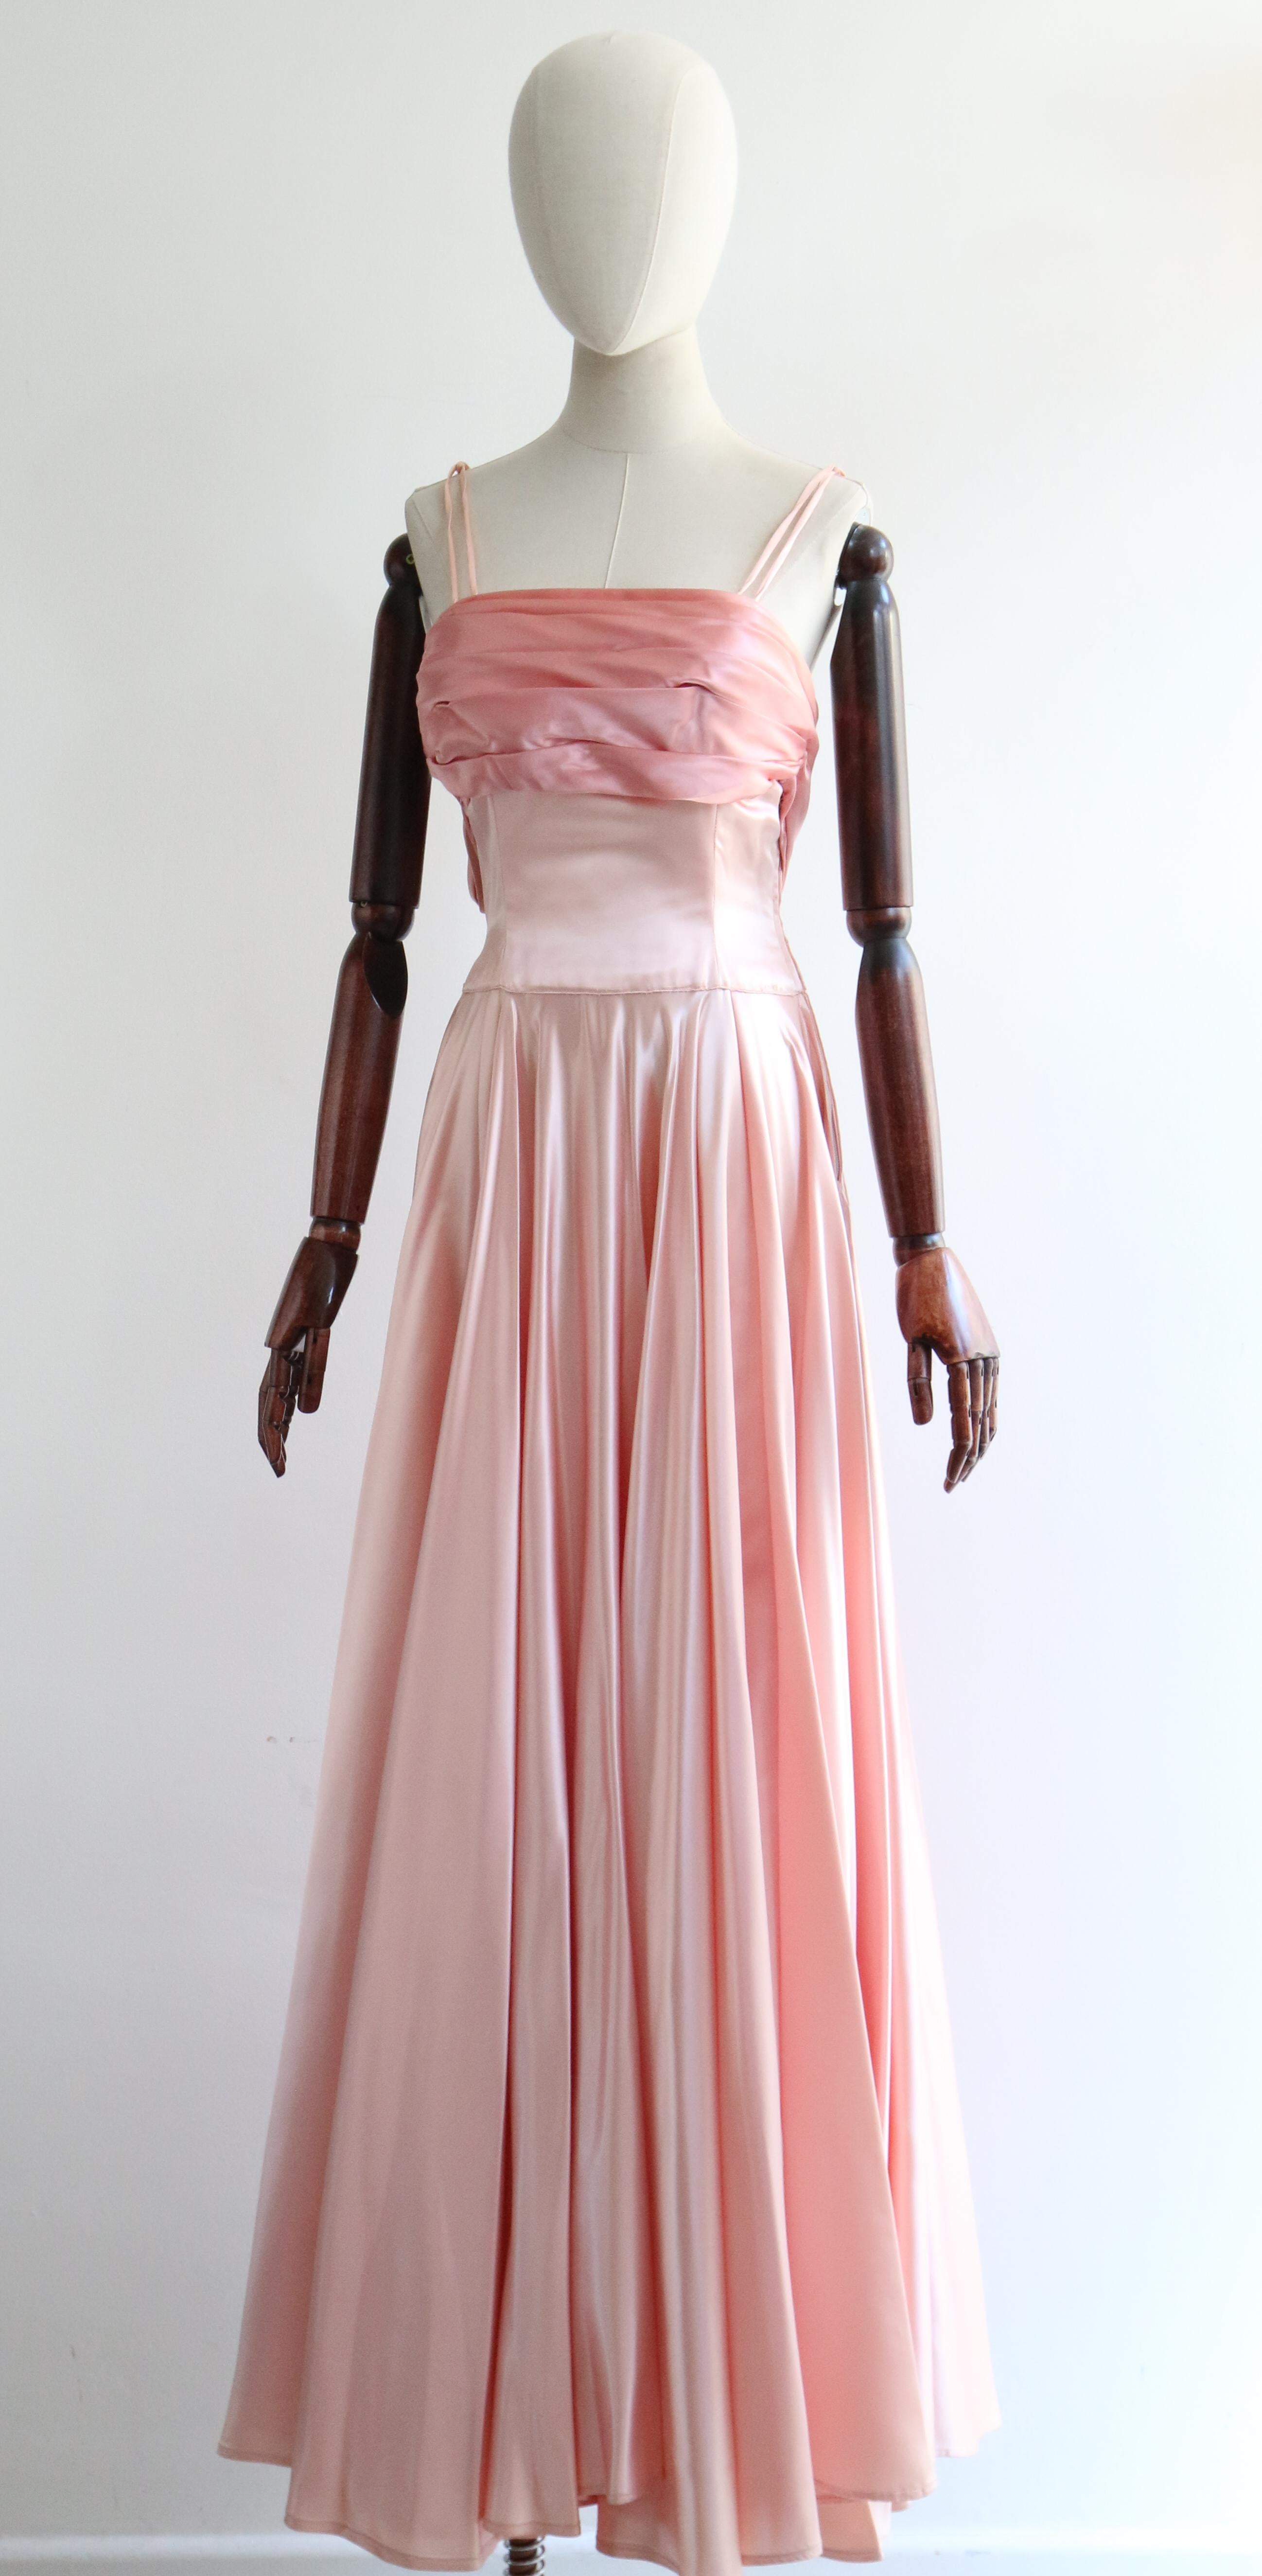 Women's or Men's Vintage 1950's Duchess Satin Rose Embellished Dress UK 10 US 6